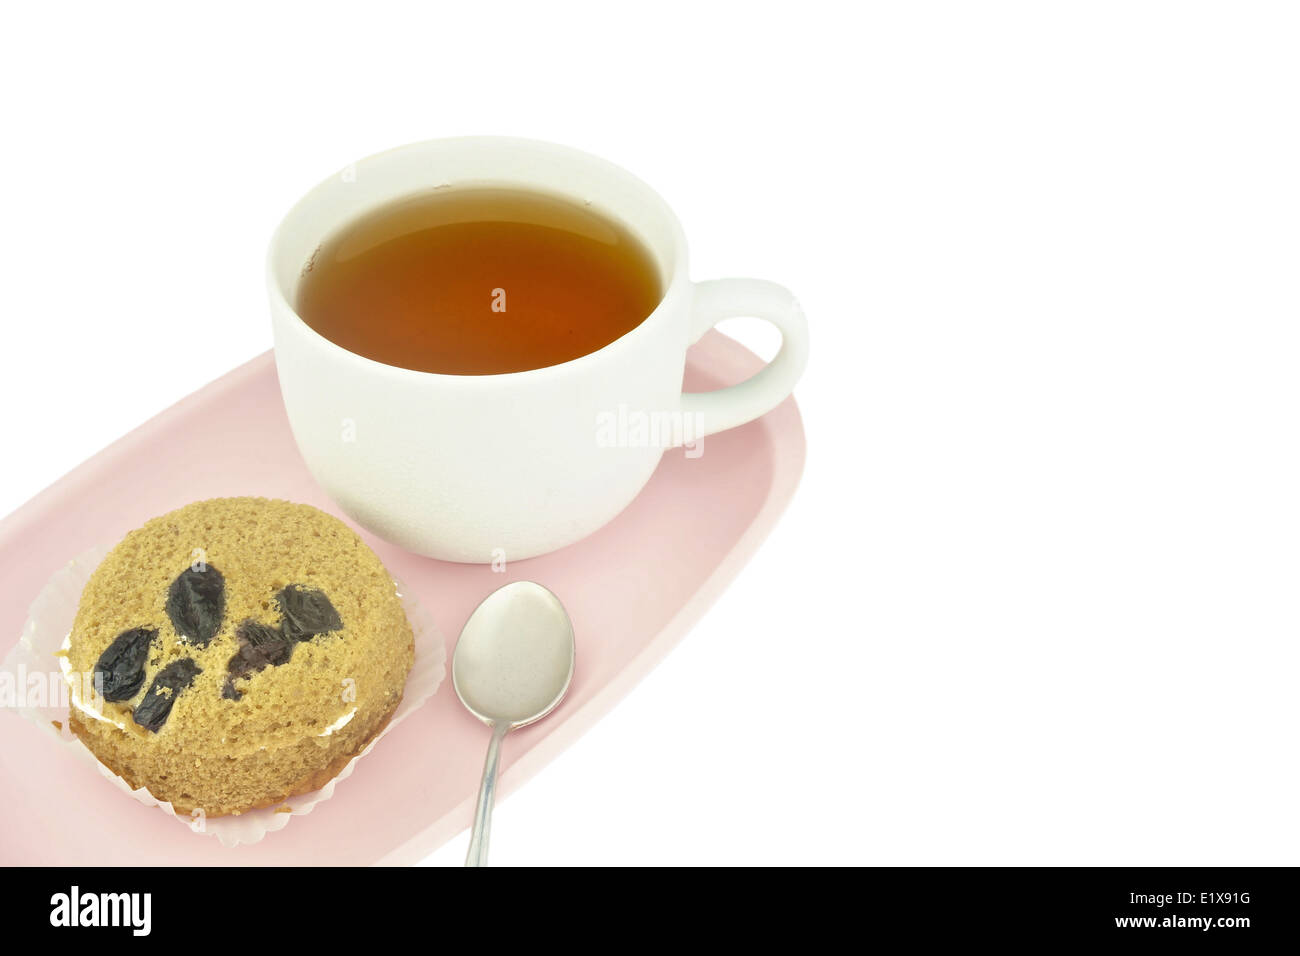 Il tè in tazza bianca e torta al lato con cucchiaio messo sul vassoio rosa isolato su sfondo bianco. Foto Stock